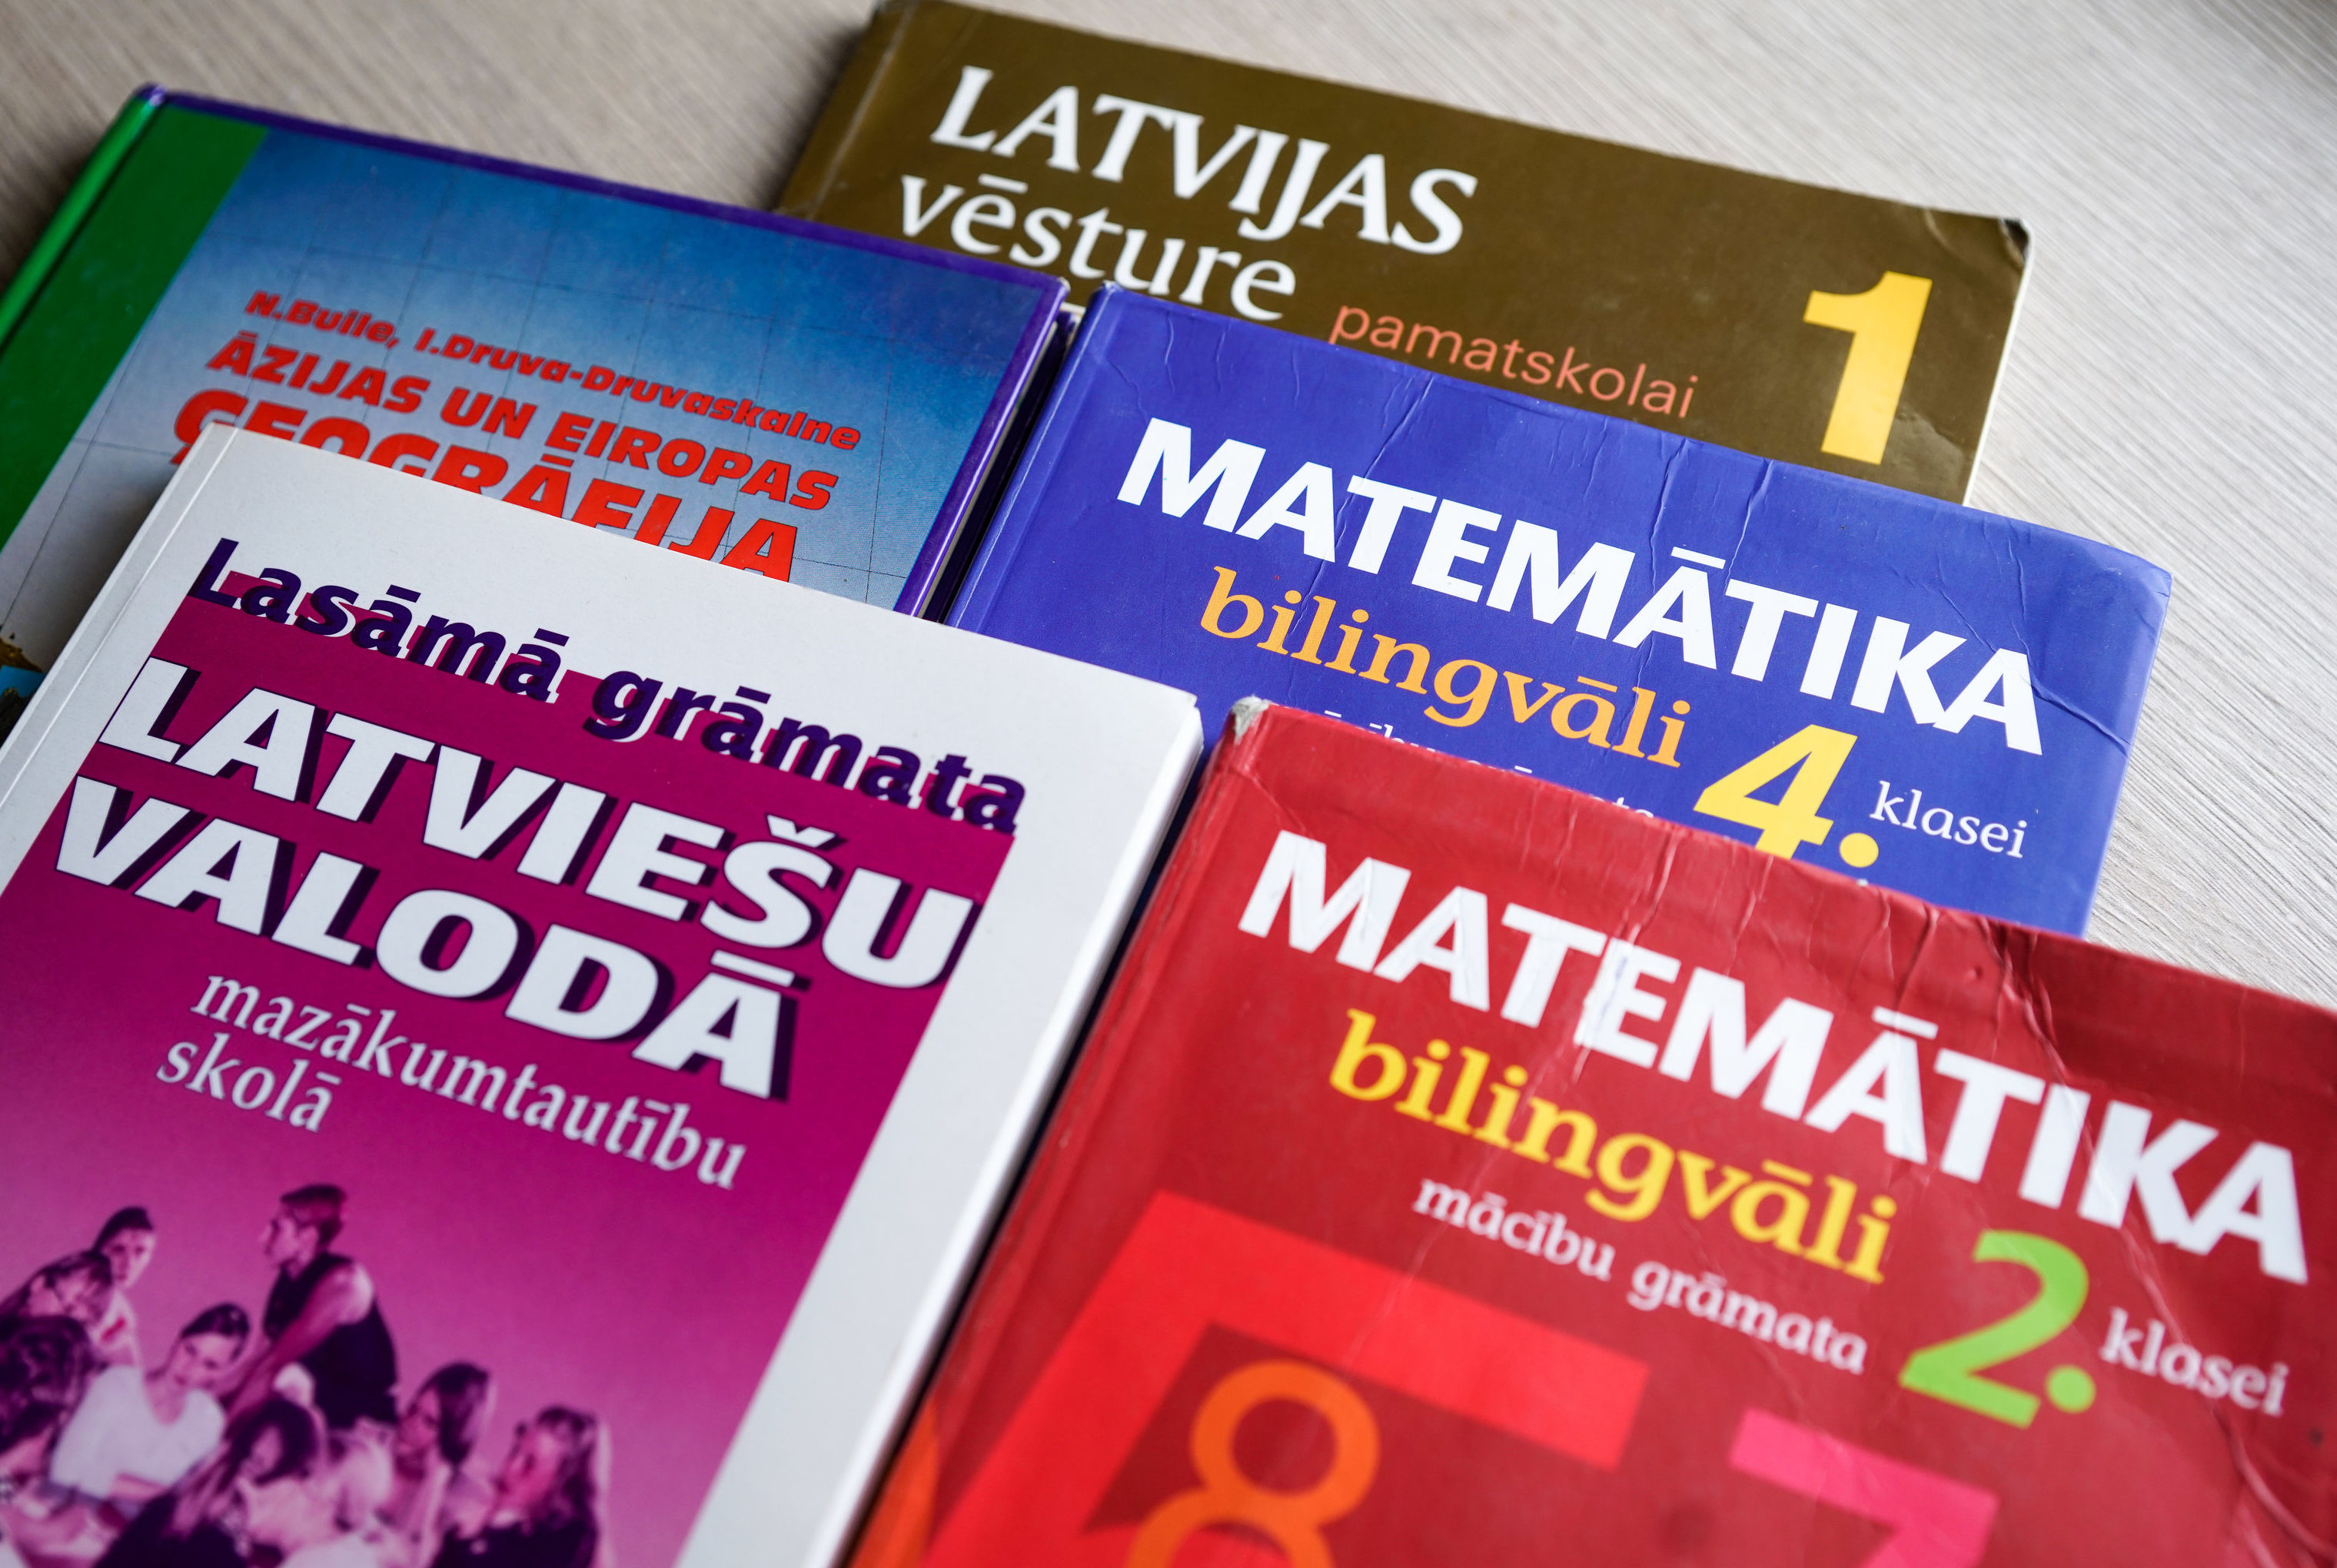 Учебники, по которым учатся дети в русской школе в Латвии.